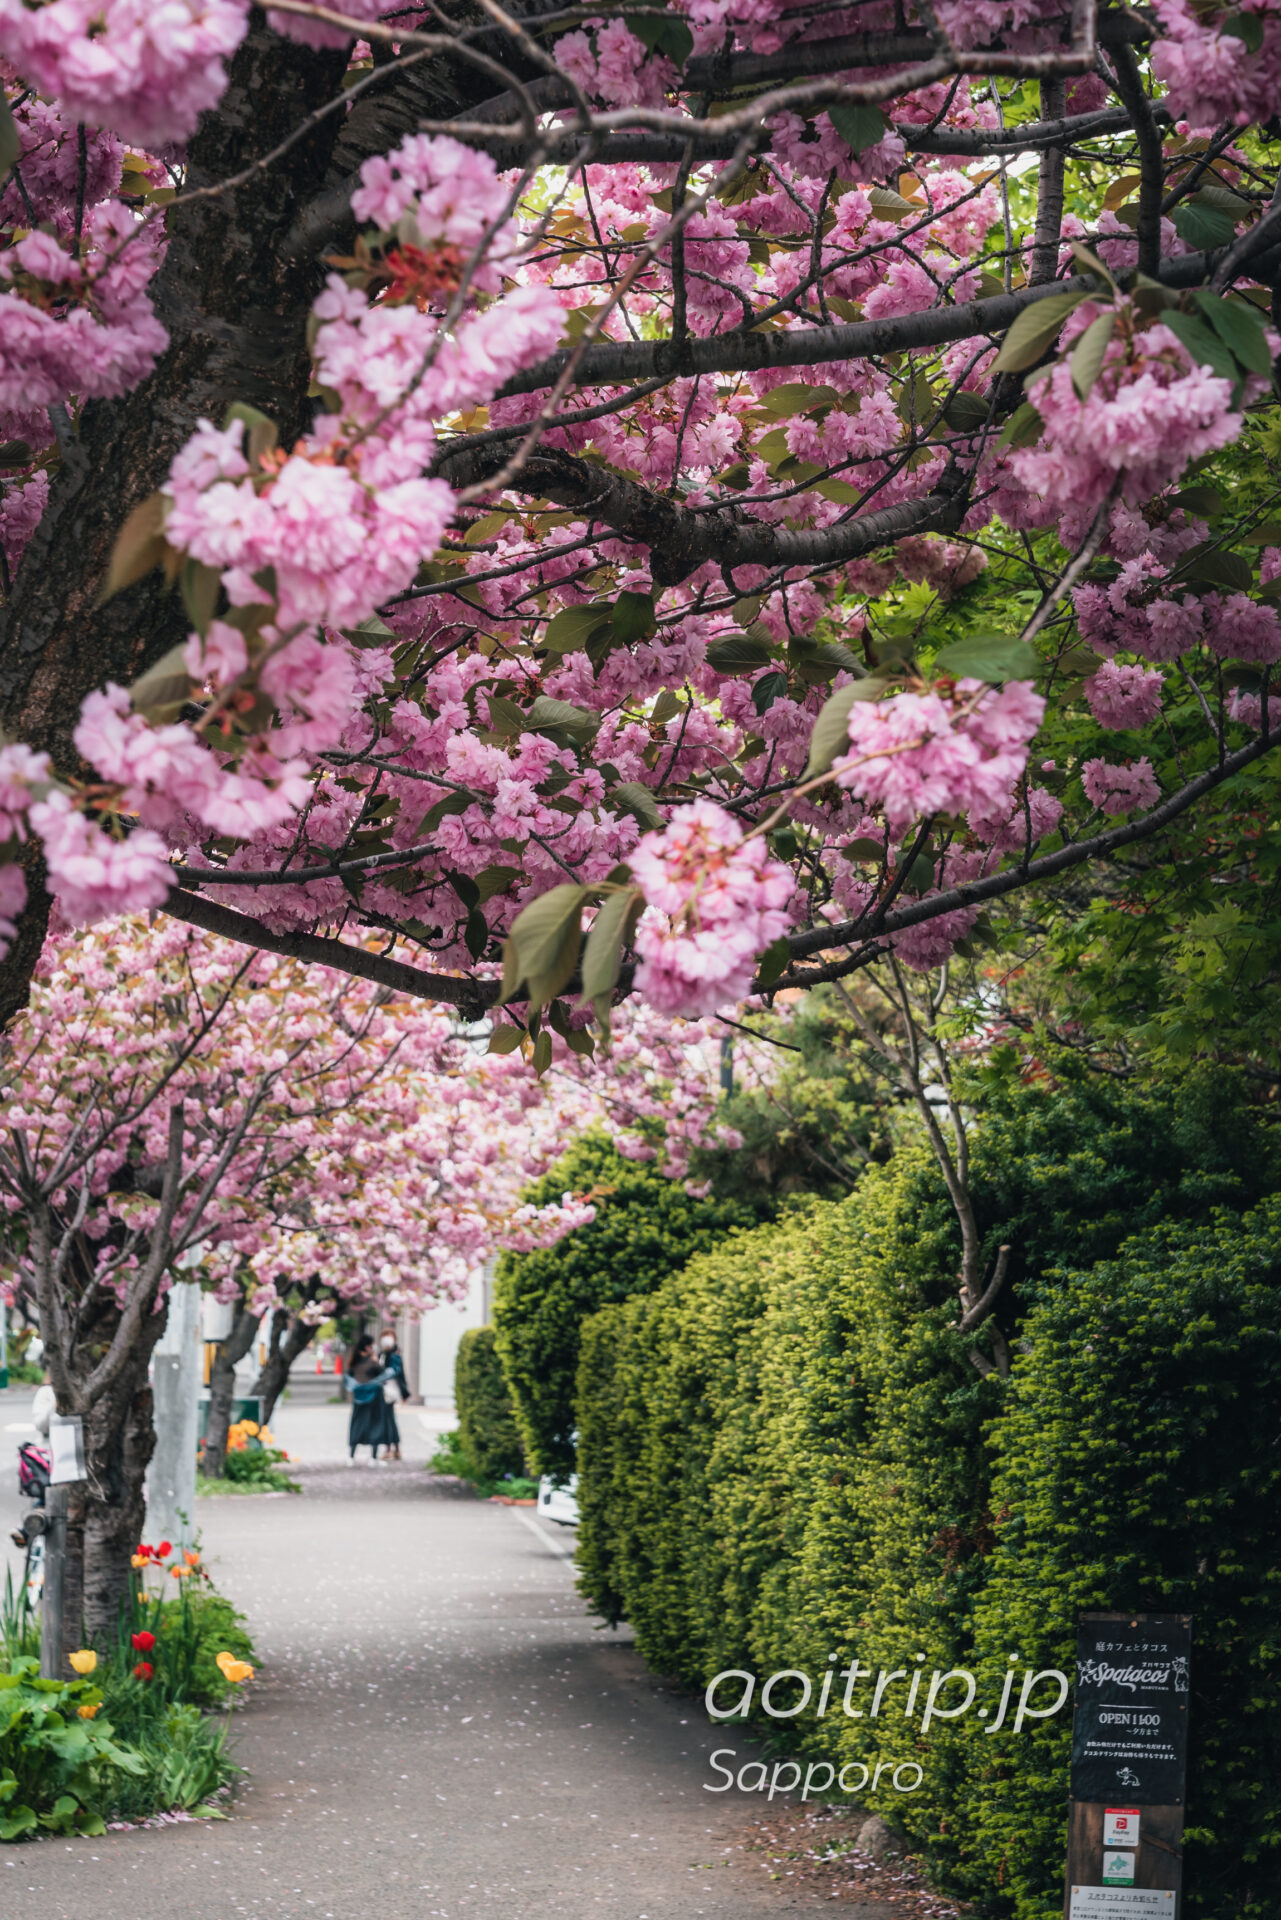 札幌 南4条線の八重桜並木 Double Cherry Blossoms